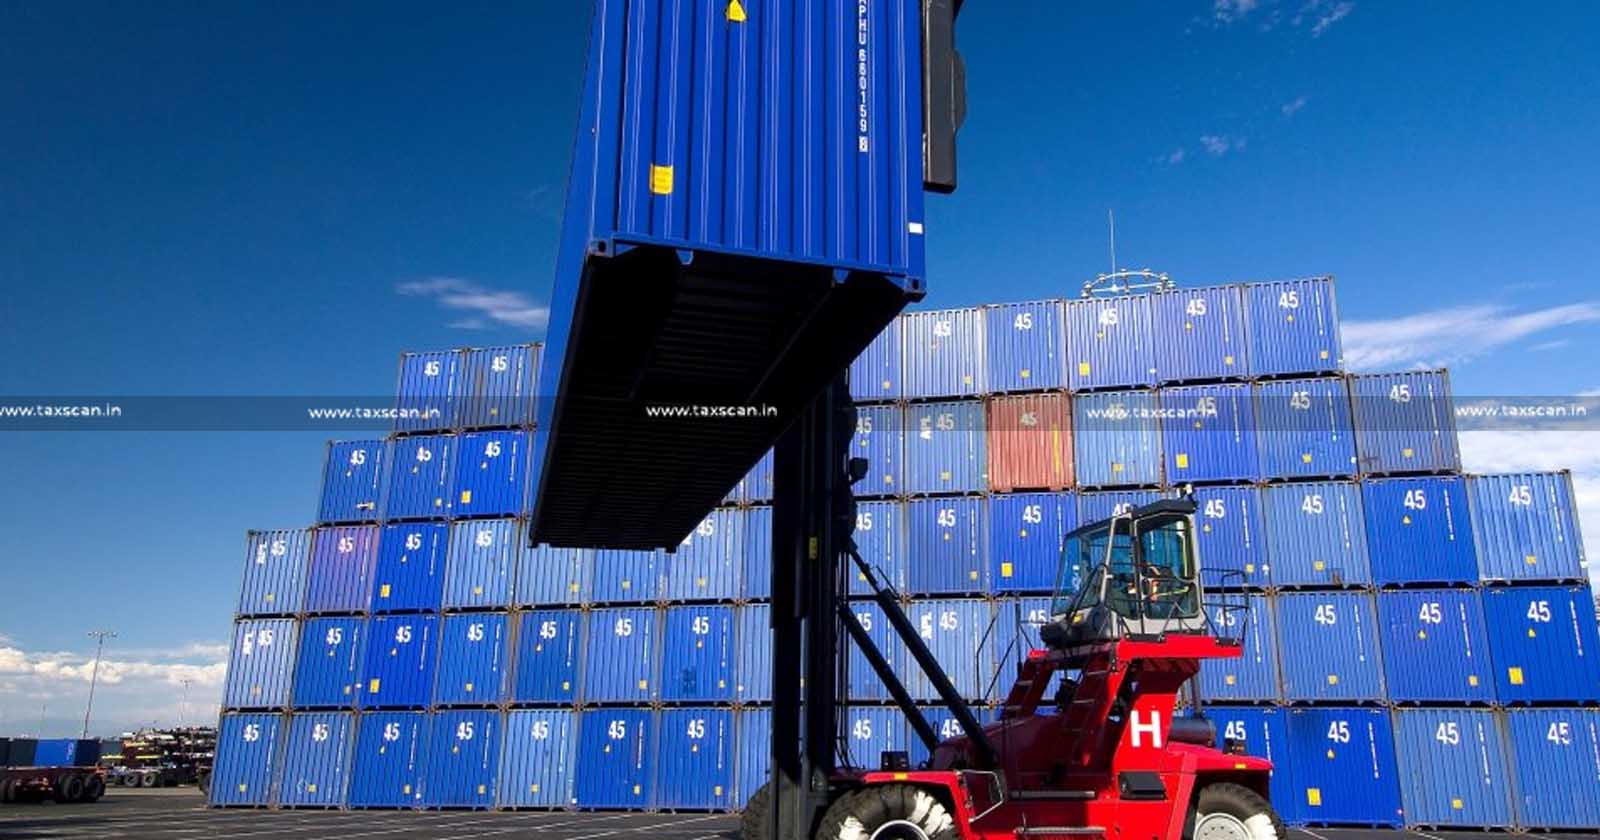 Unloading goods - transportation - Cargo Handling Service - Cargo - CESTAT - Service Tax demand - Service Tax - demand - Taxscan